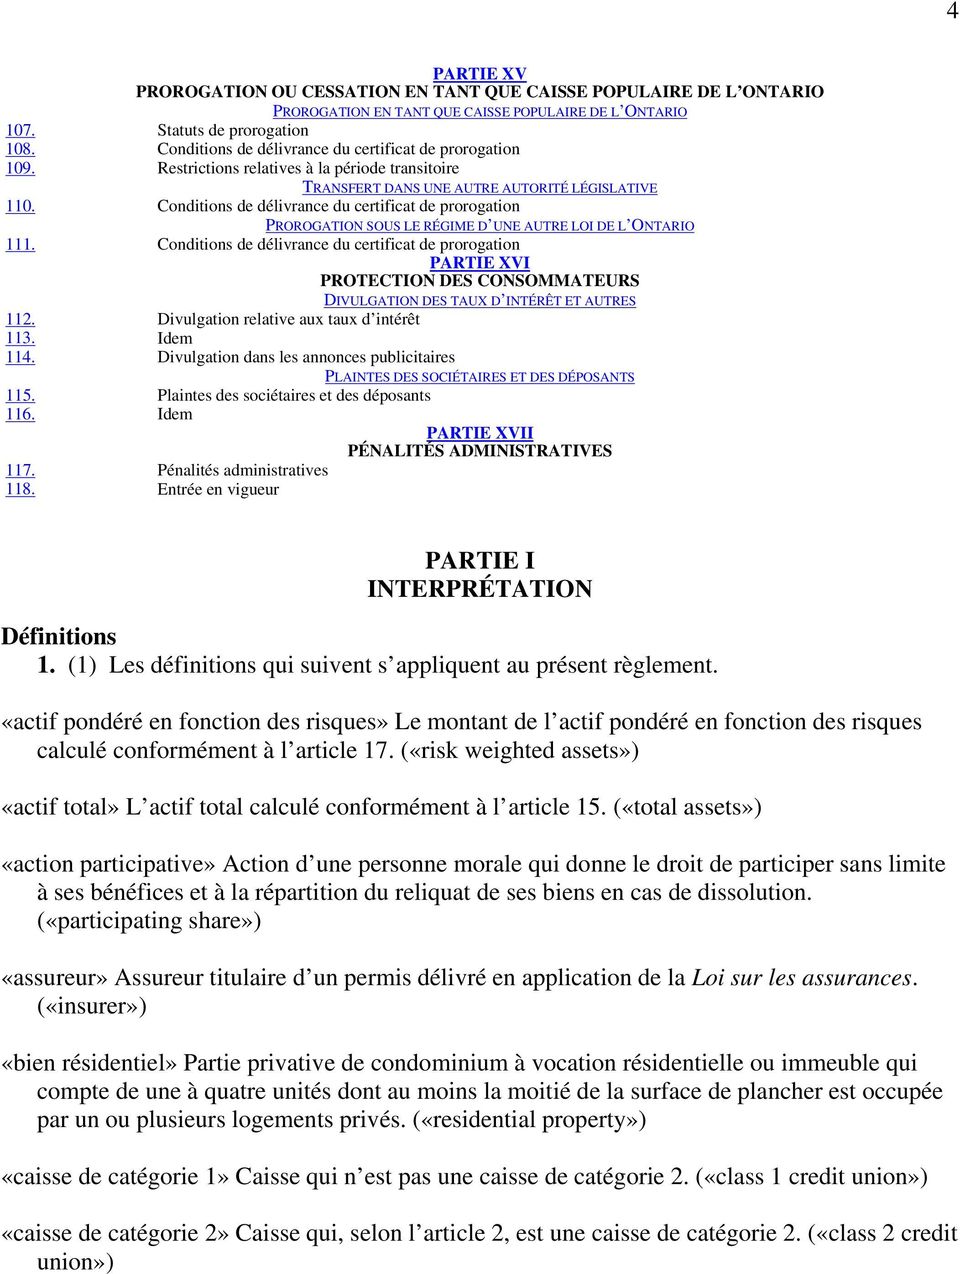 Conditions de délivrance du certificat de prorogation PROROGATION SOUS LE RÉGIME D UNE AUTRE LOI DE L ONTARIO 111.